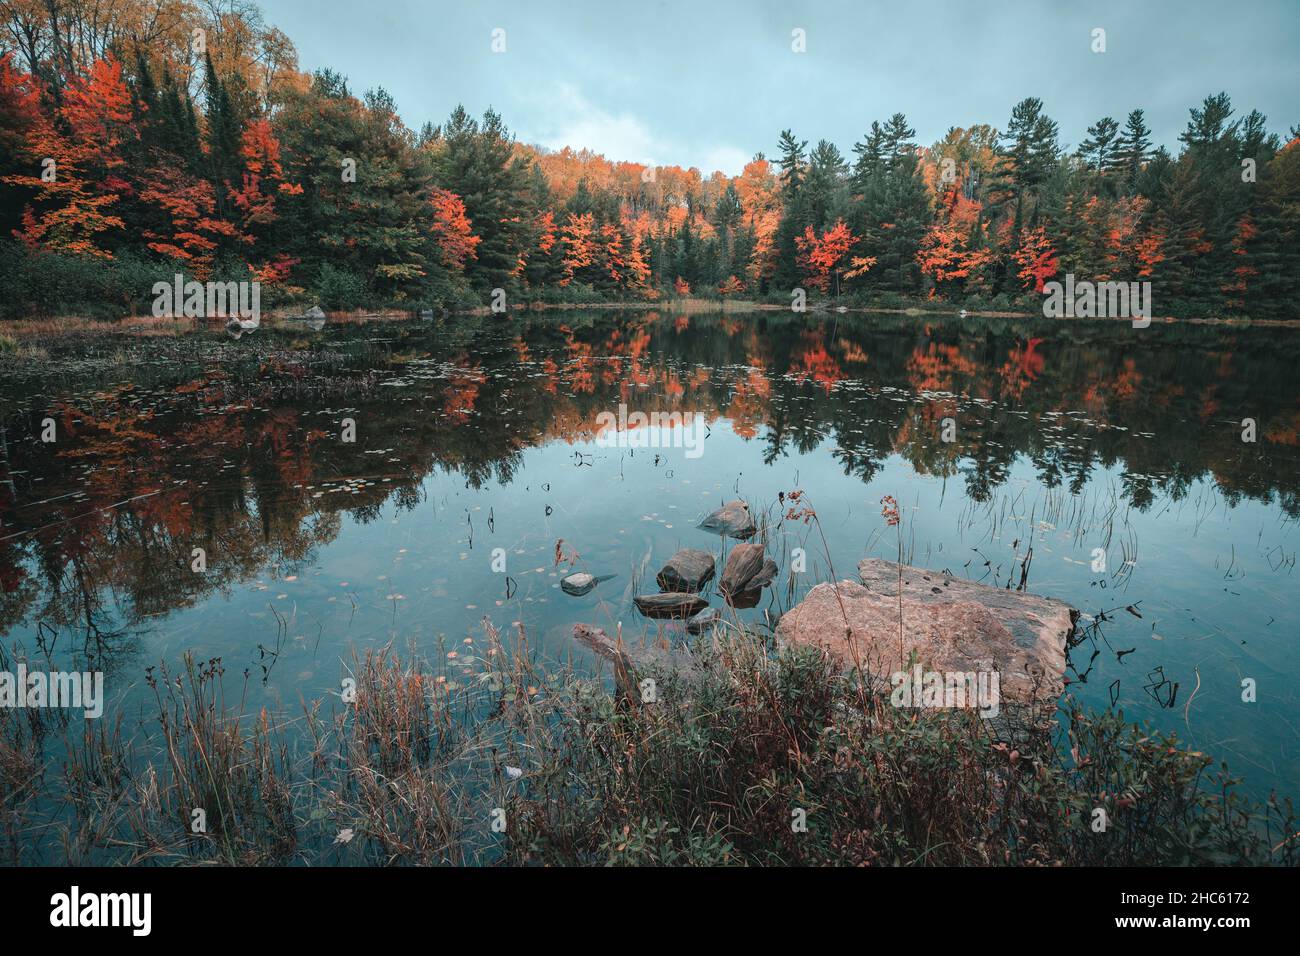 Photo hypnotique d'un petit lac forestier entouré de sapins en automne Banque D'Images